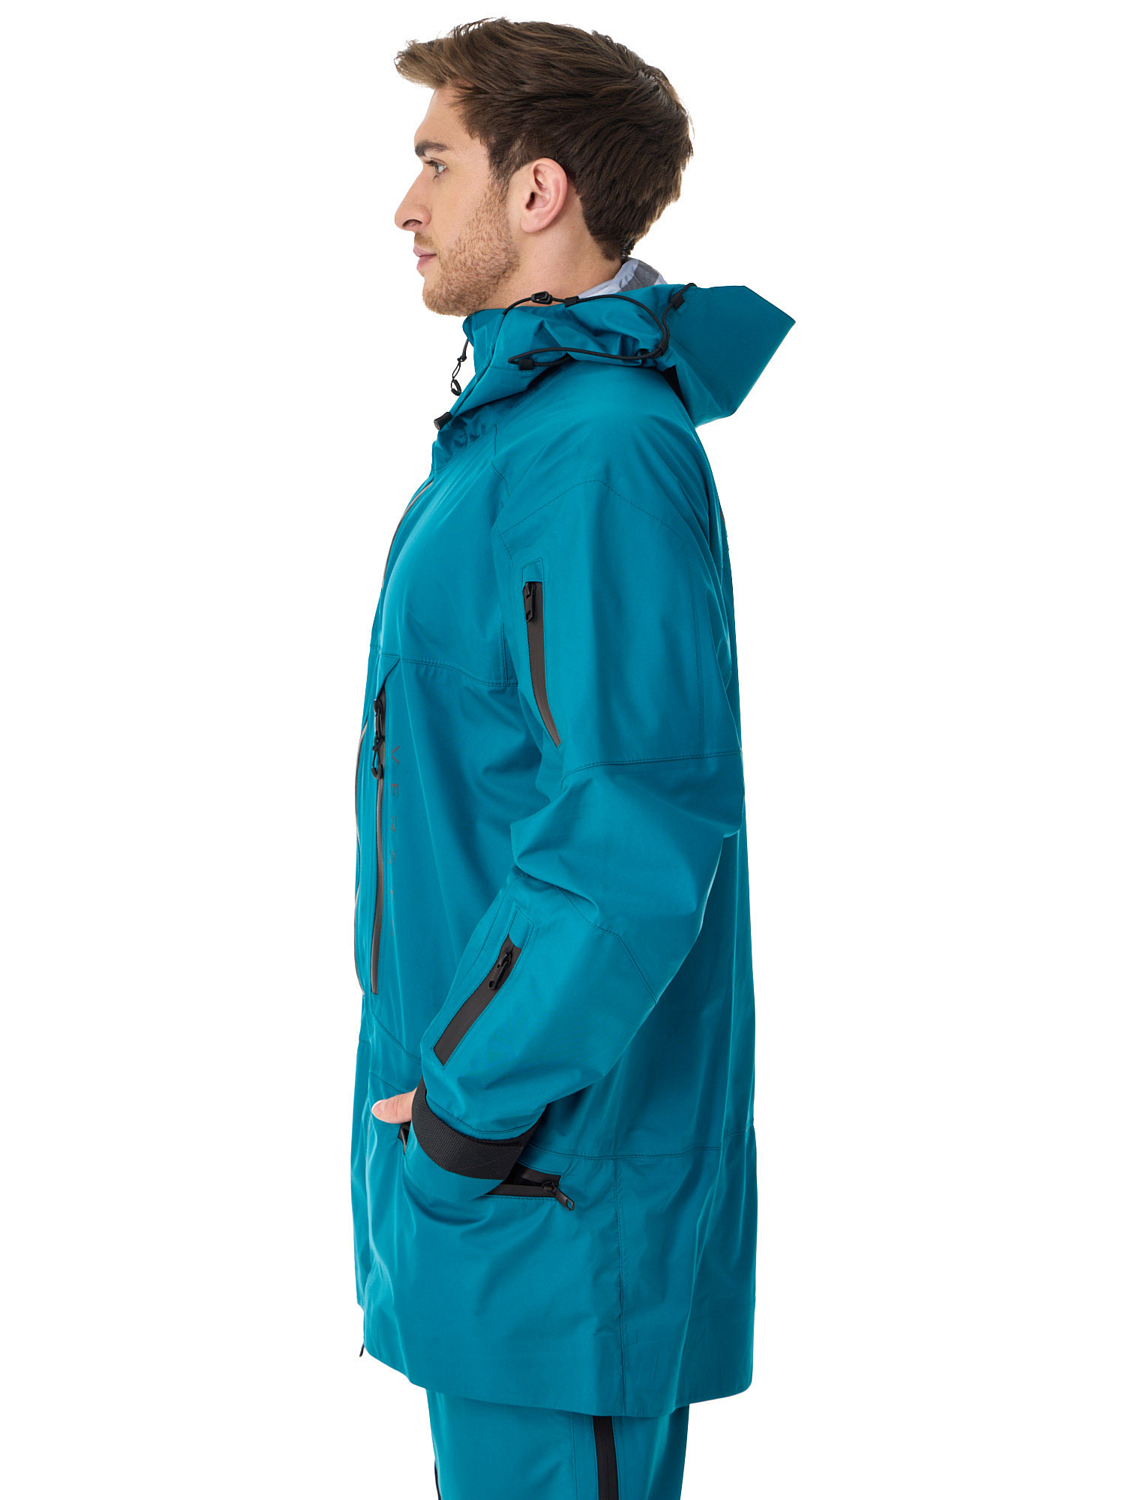 Куртка сноубордическая Versta Rider Collection Turquoise